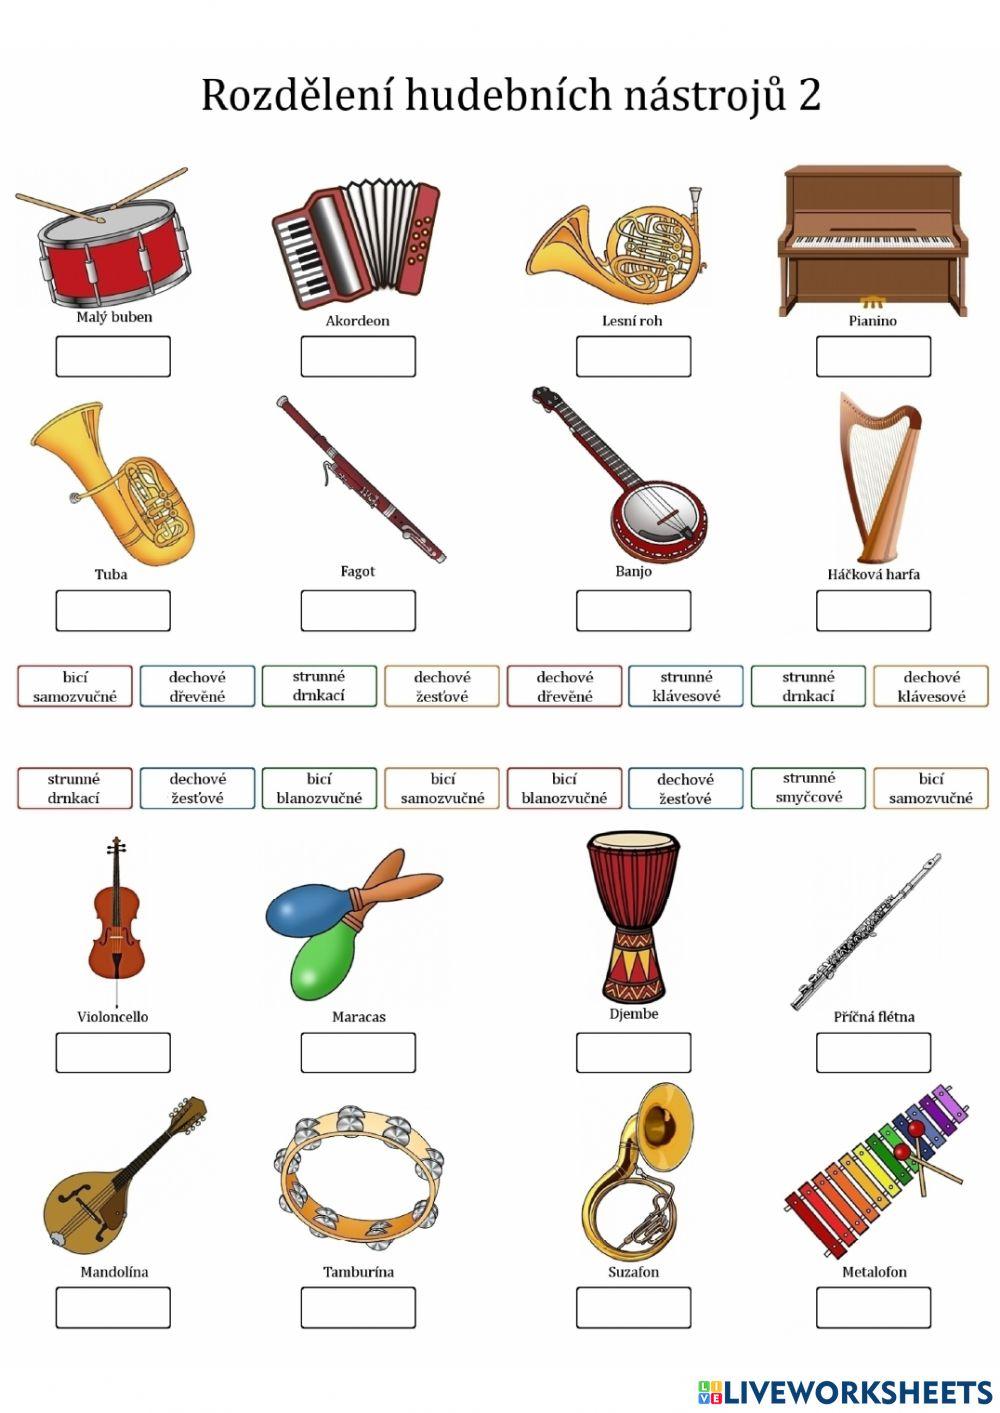 Rozdělení hudebních nástrojů 2 interactive worksheet | Live Worksheets